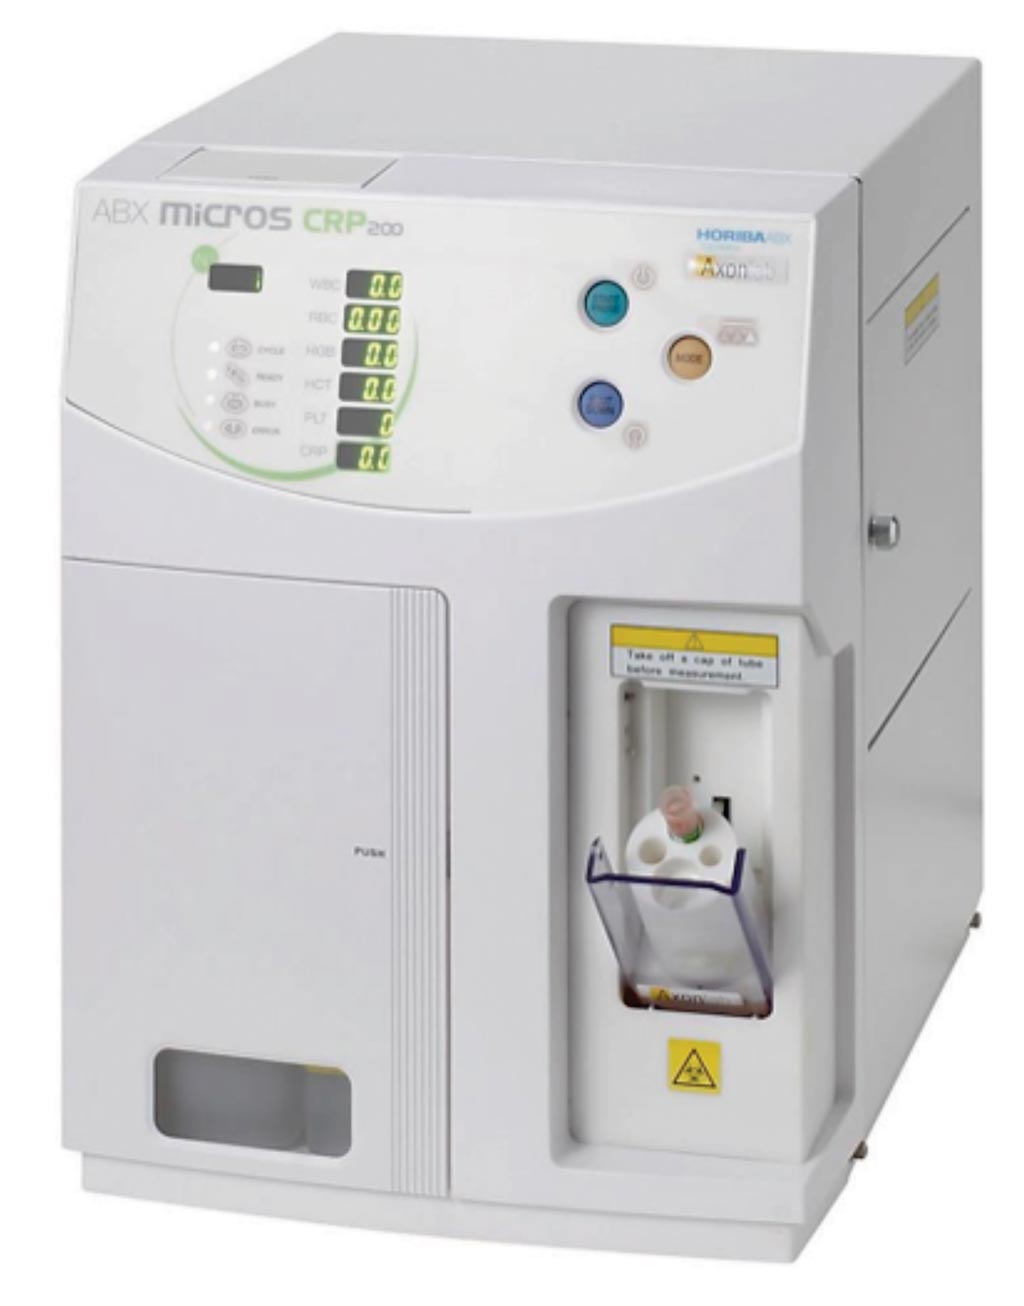 Image: The ABX Micros CRP 200 hematology analyzer (Photo courtesy of Horiba Medical).